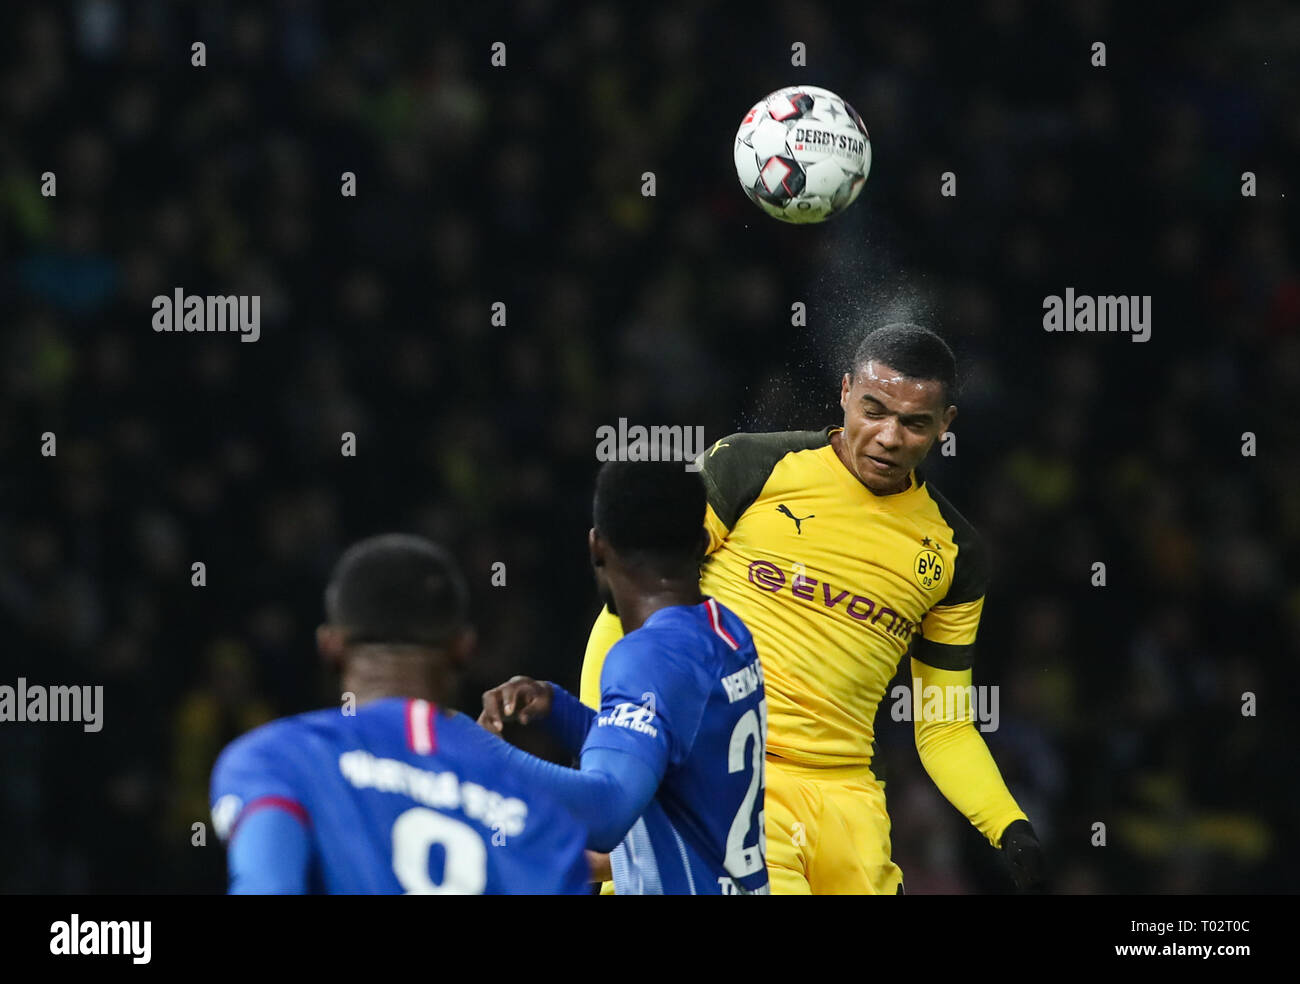 Berlino, Germania. 16 Mar, 2019. Dortmund è Manuel Akanji (up) compete durante un match della Bundesliga tra Hertha BSC e il Borussia Dortmund, a Berlino, Germania, il 16 marzo 2019. Dortmund ha vinto 3-2. Credito: Shan Yuqi/Xinhua/Alamy Live News Foto Stock